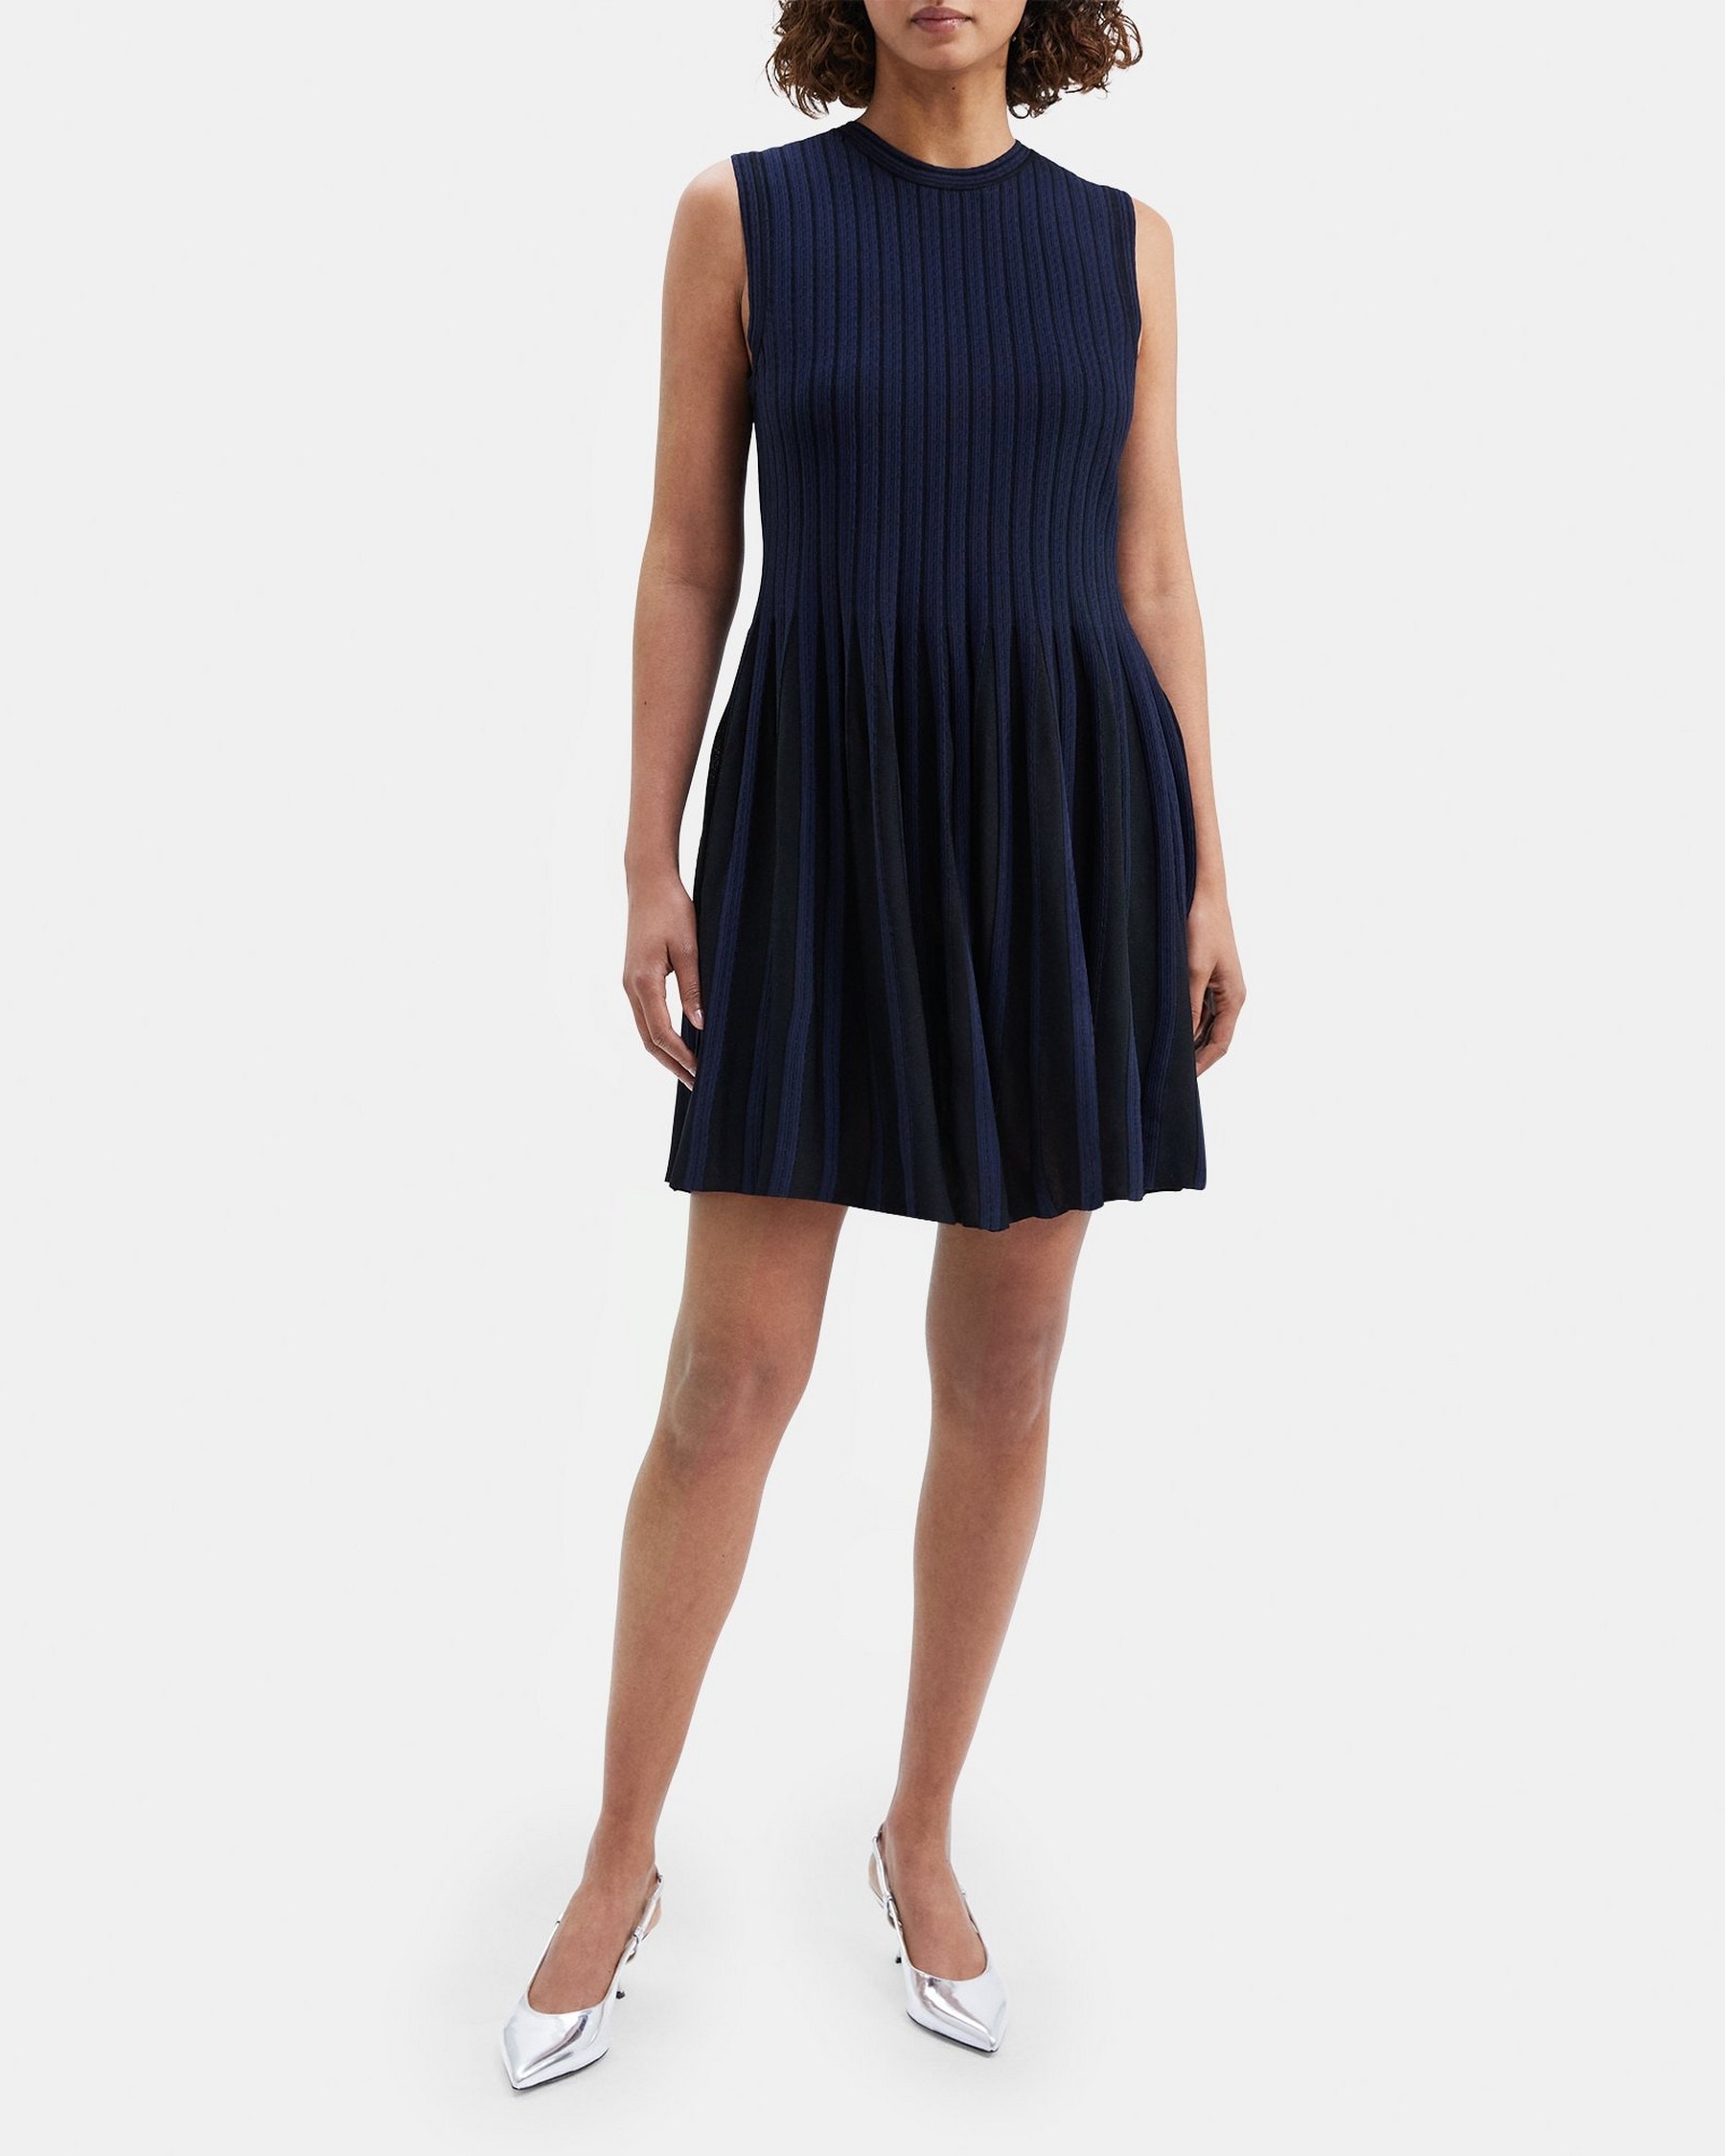 띠어리 Theory Striped Pleat Dress in Compact Stretch Knit,BLACK/NAVY